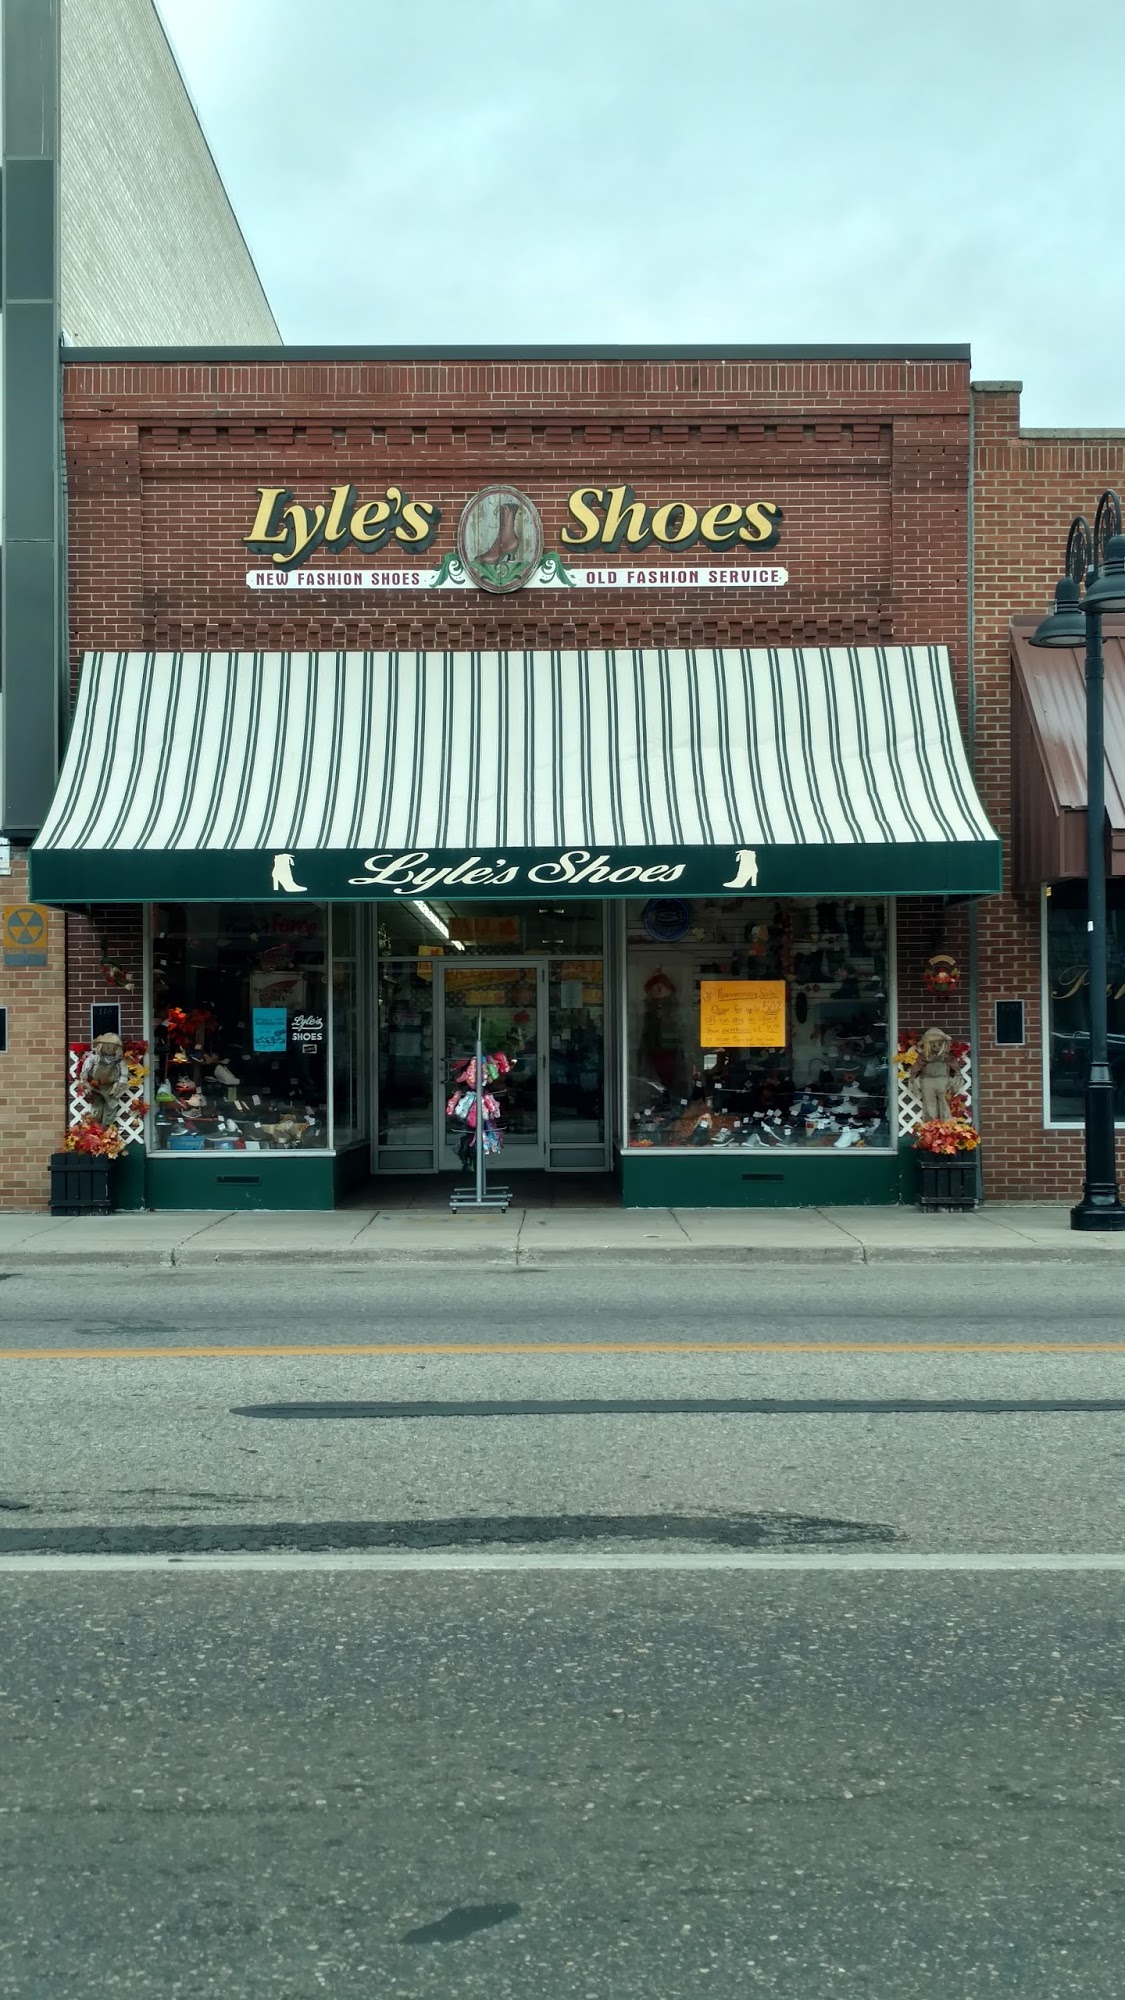 Lyle's Shoes